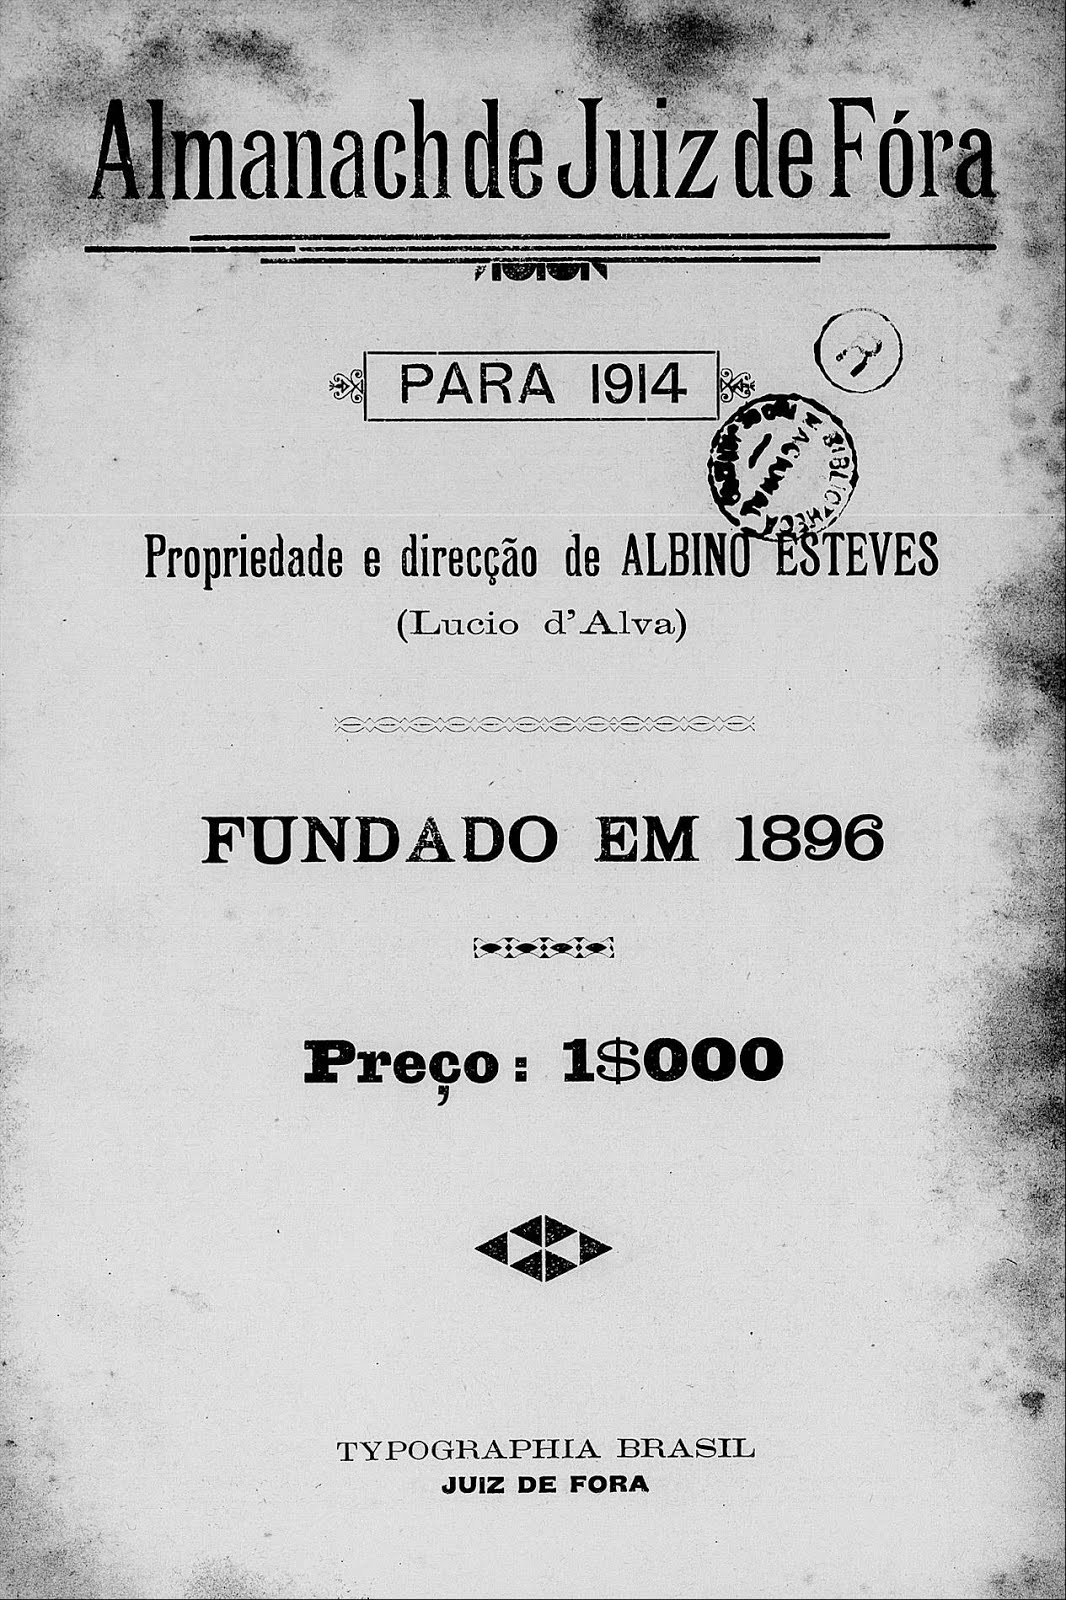 Almanaque de 1914